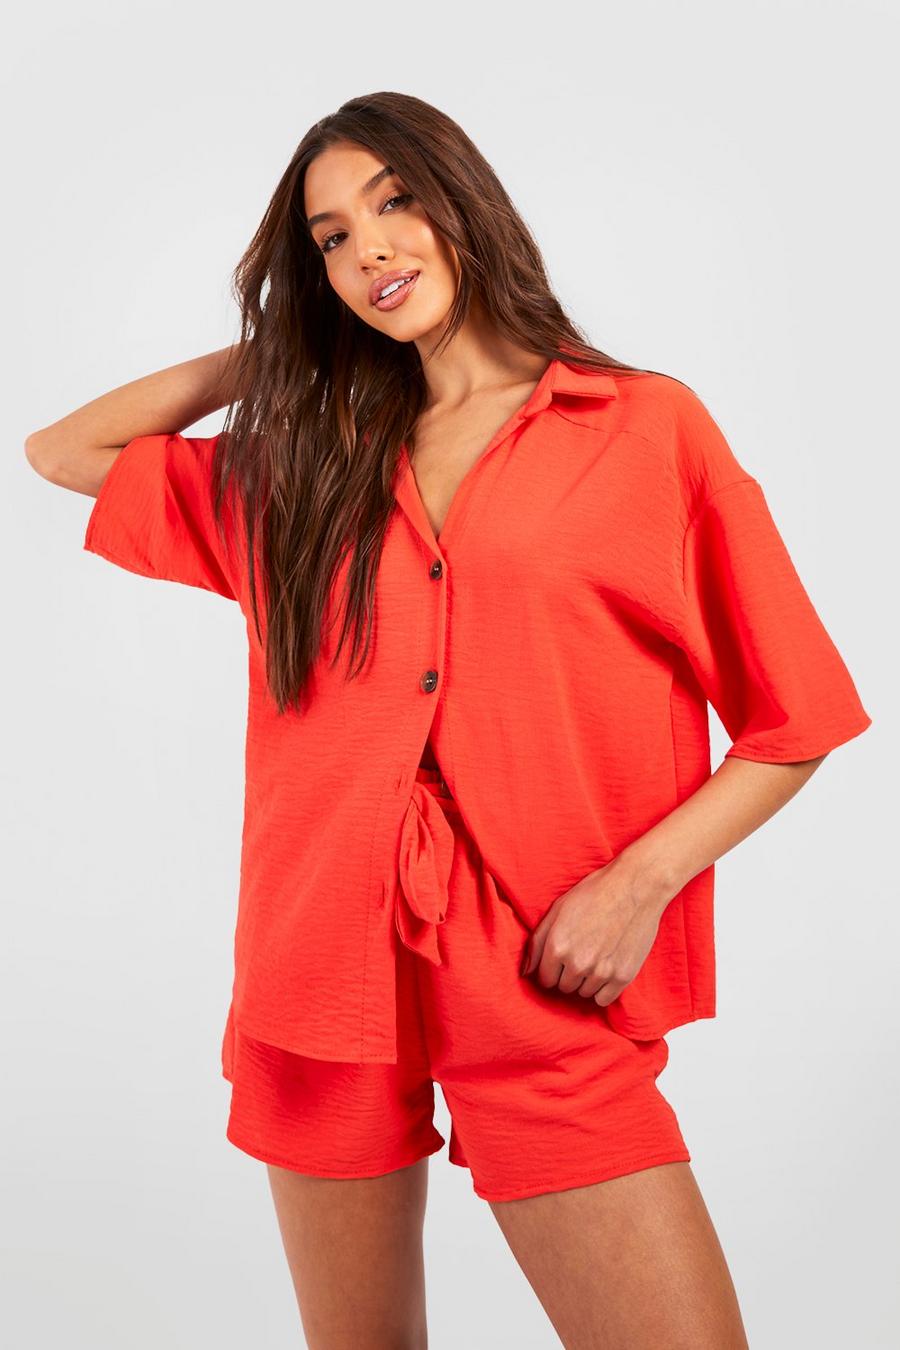 Camicia rilassata effetto martellato & pantaloncini con laccetti in vita, Red orange